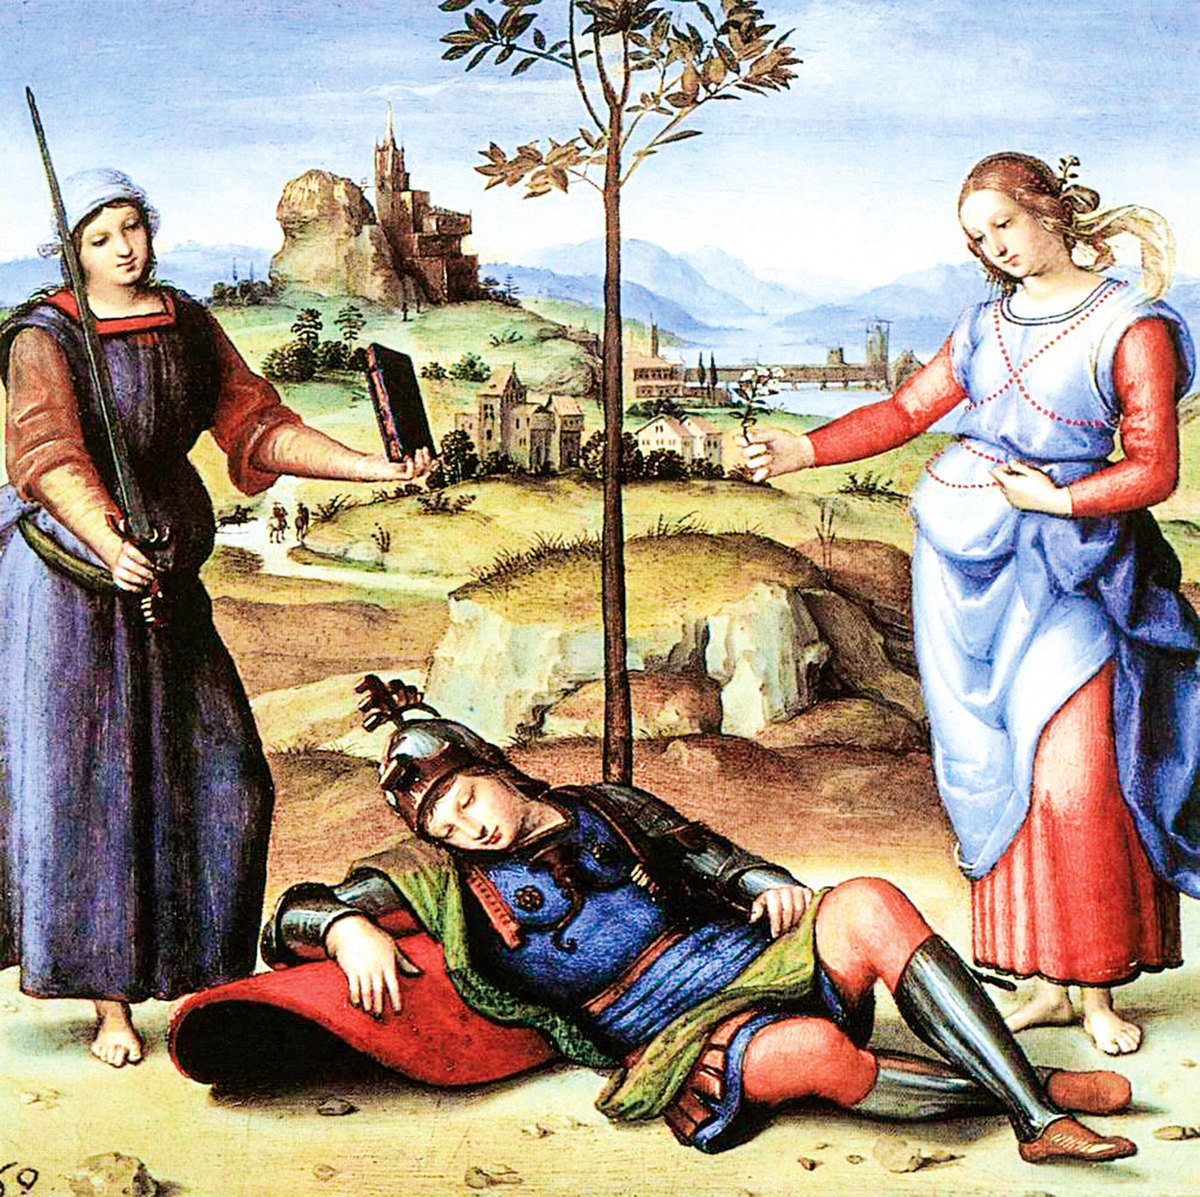 拉斐爾的作品《騎士之夢》（An Allegory（Vision of a Knight）），1504年。蛋彩、畫板，17.1 x 17.1公分。倫敦國家美術館收藏。(公有領域)